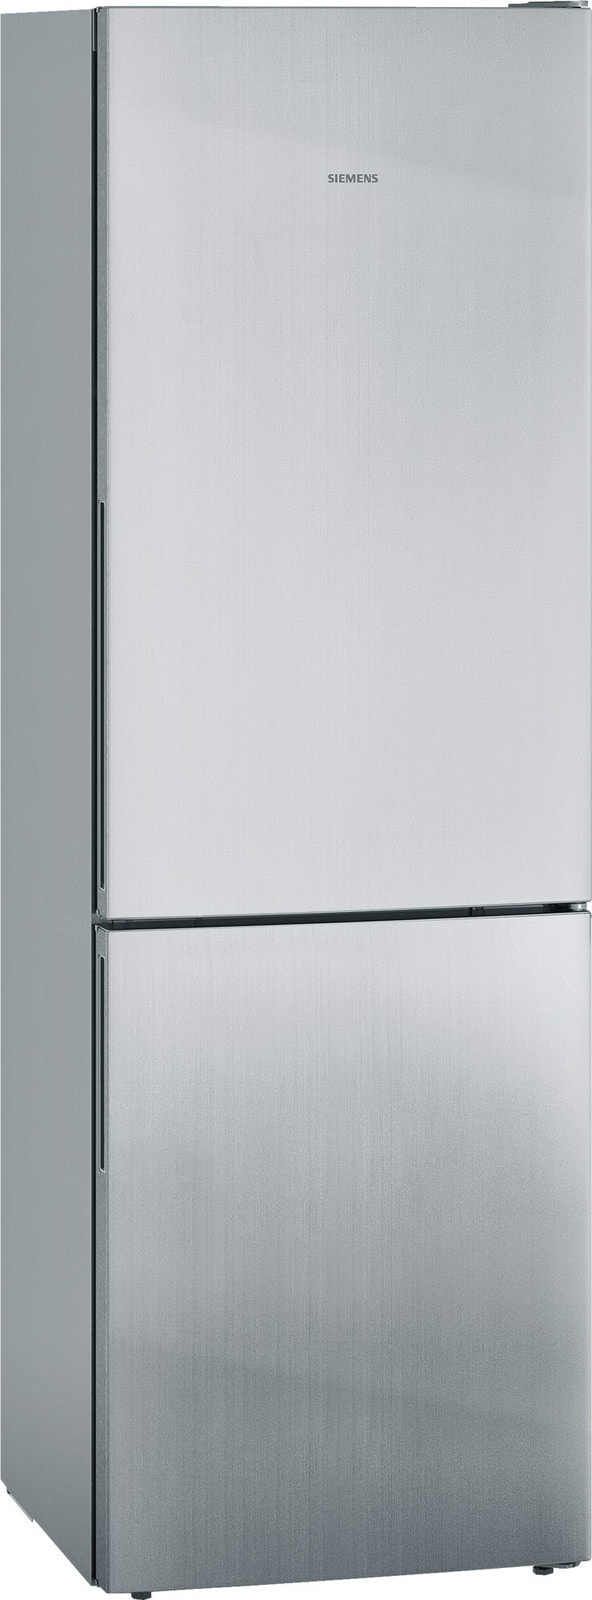 Siemens iQ500 KG36EALCA холодильник с морозильной камерой Встроенный Нержавеющая сталь 302 L A+++